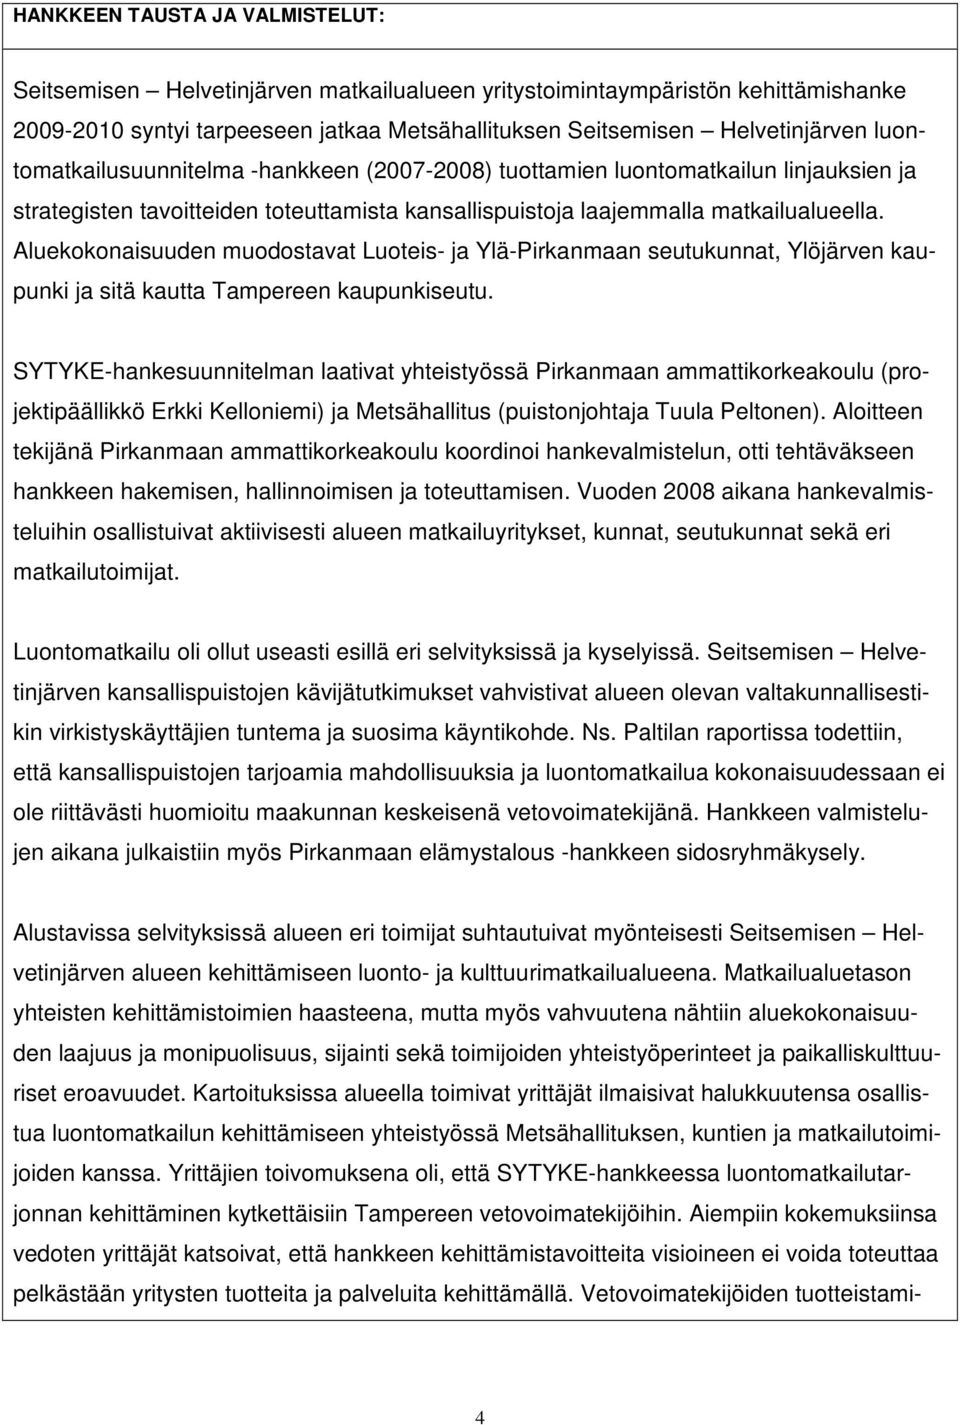 Aluekokonaisuuden muodostavat Luoteis- ja Ylä-Pirkanmaan seutukunnat, Ylöjärven kaupunki ja sitä kautta Tampereen kaupunkiseutu.